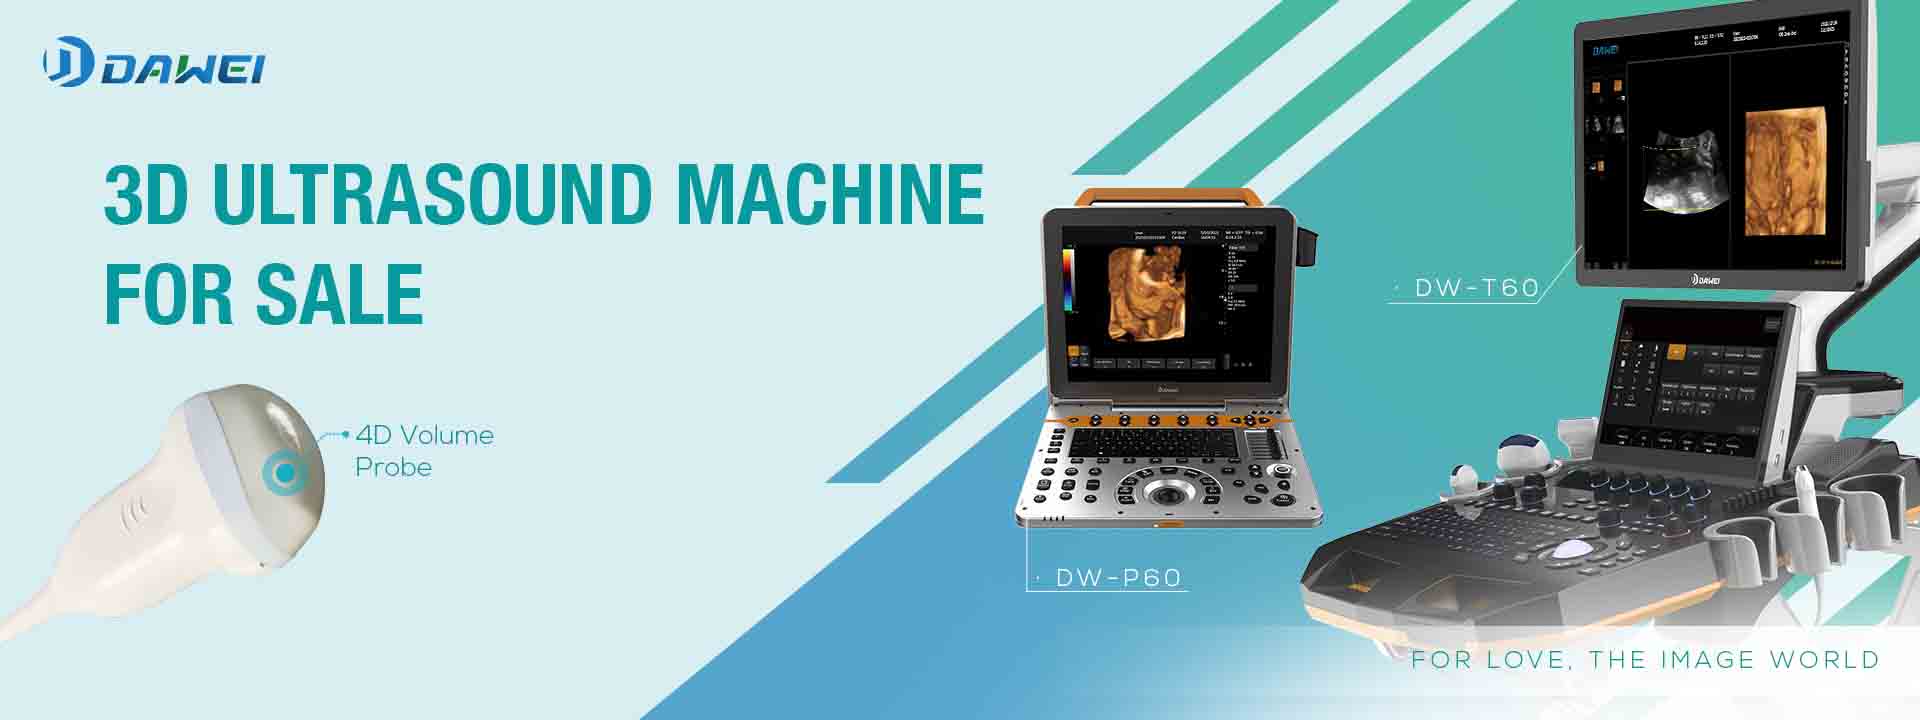 Máquina de ultrasonido 3D médica Dawei a la venta